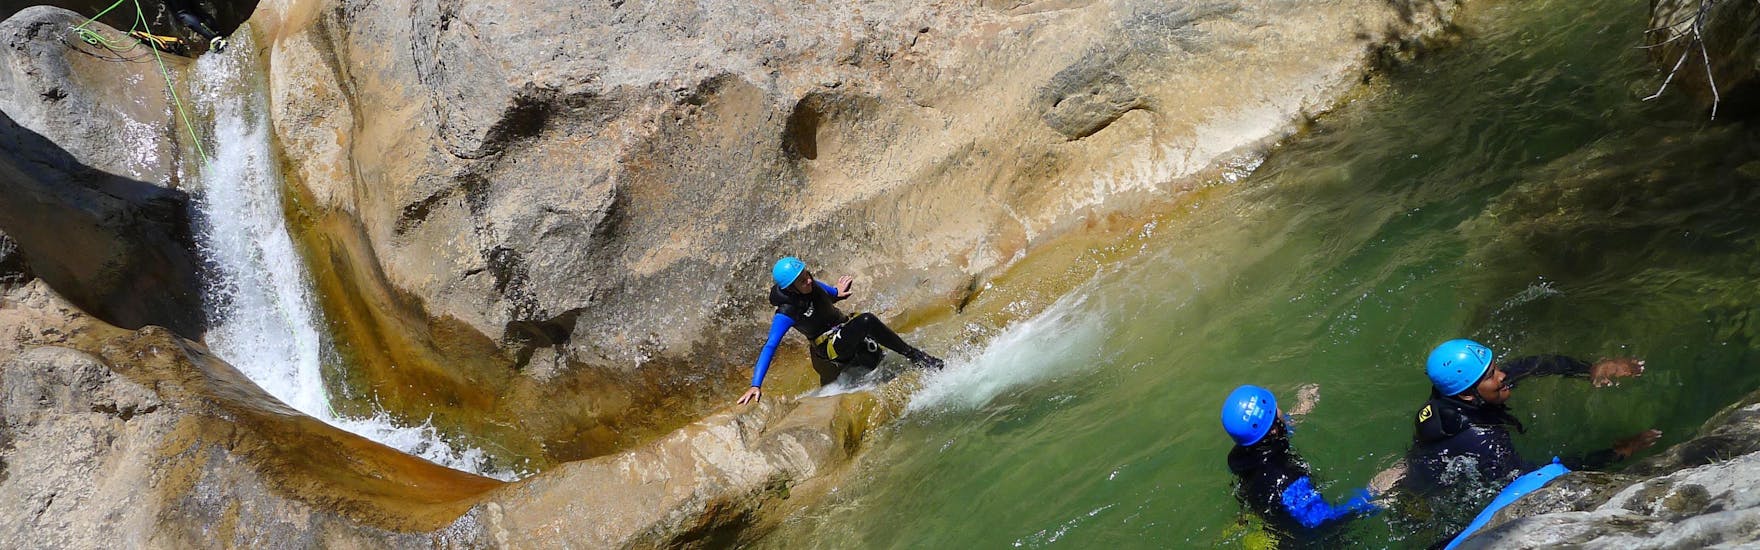 Une fille fait de la descente en rappel dans le Canyon d'Arlos lors de la découverte du Canyoning avec H2O vives.